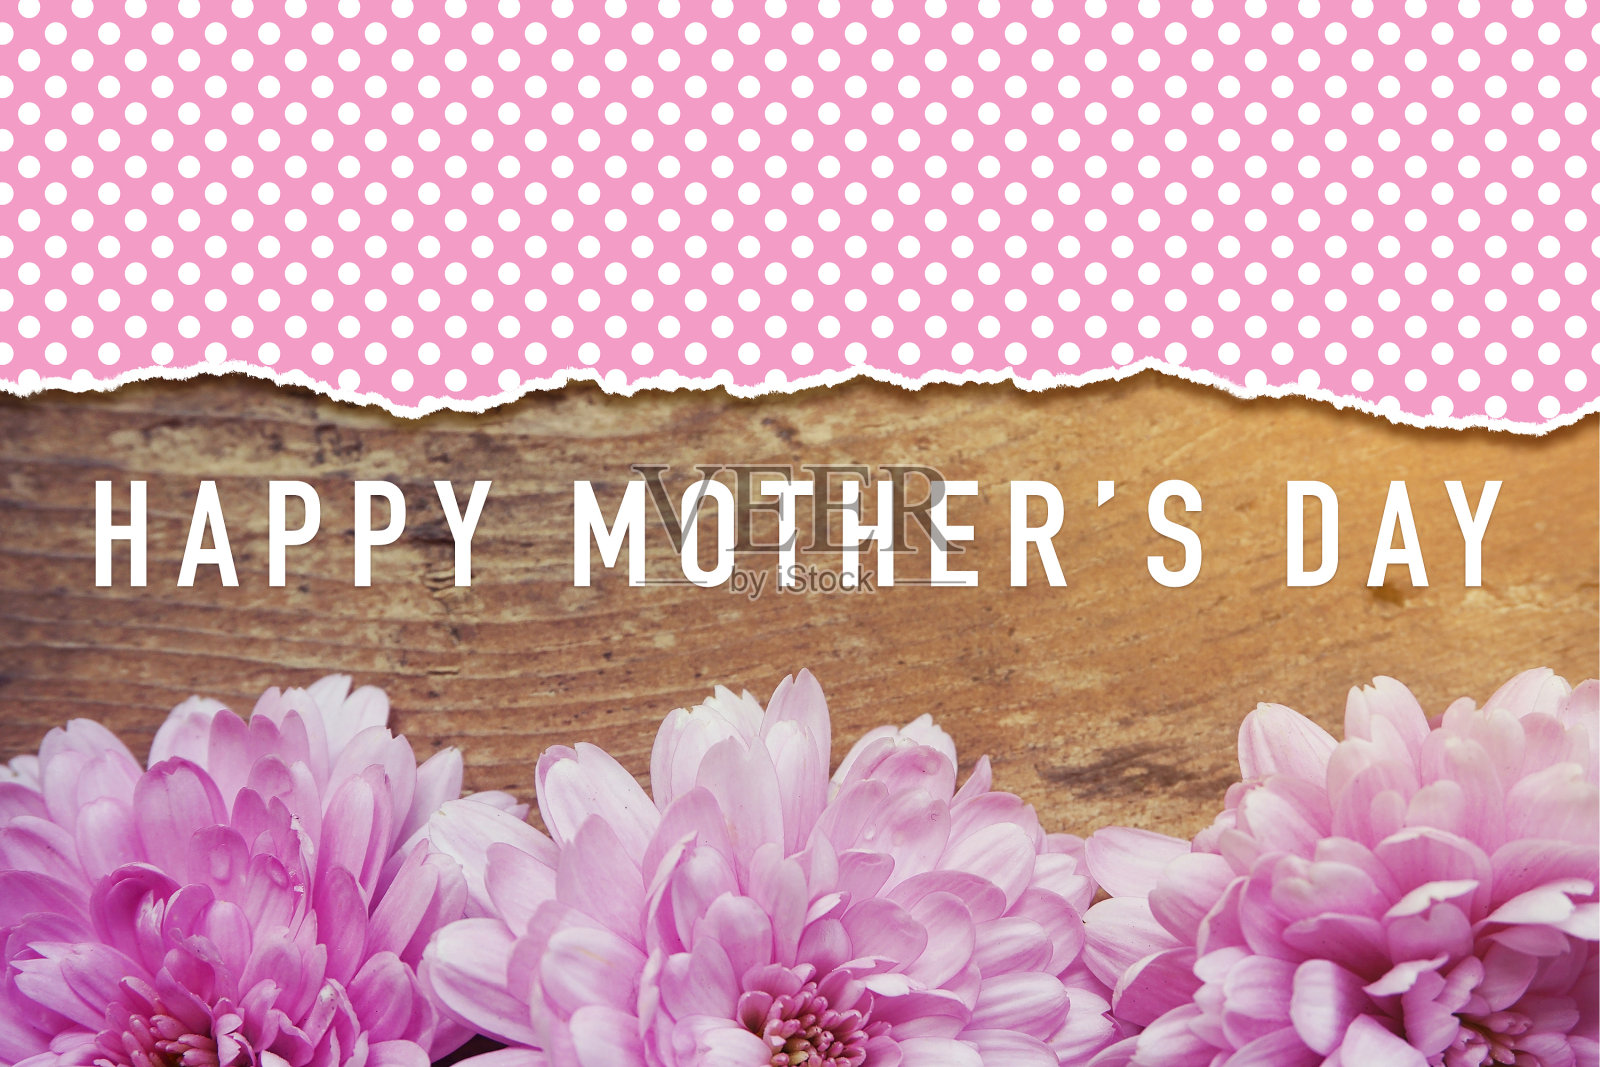 木制的粉红色花朵上写着“母亲节快乐”照片摄影图片